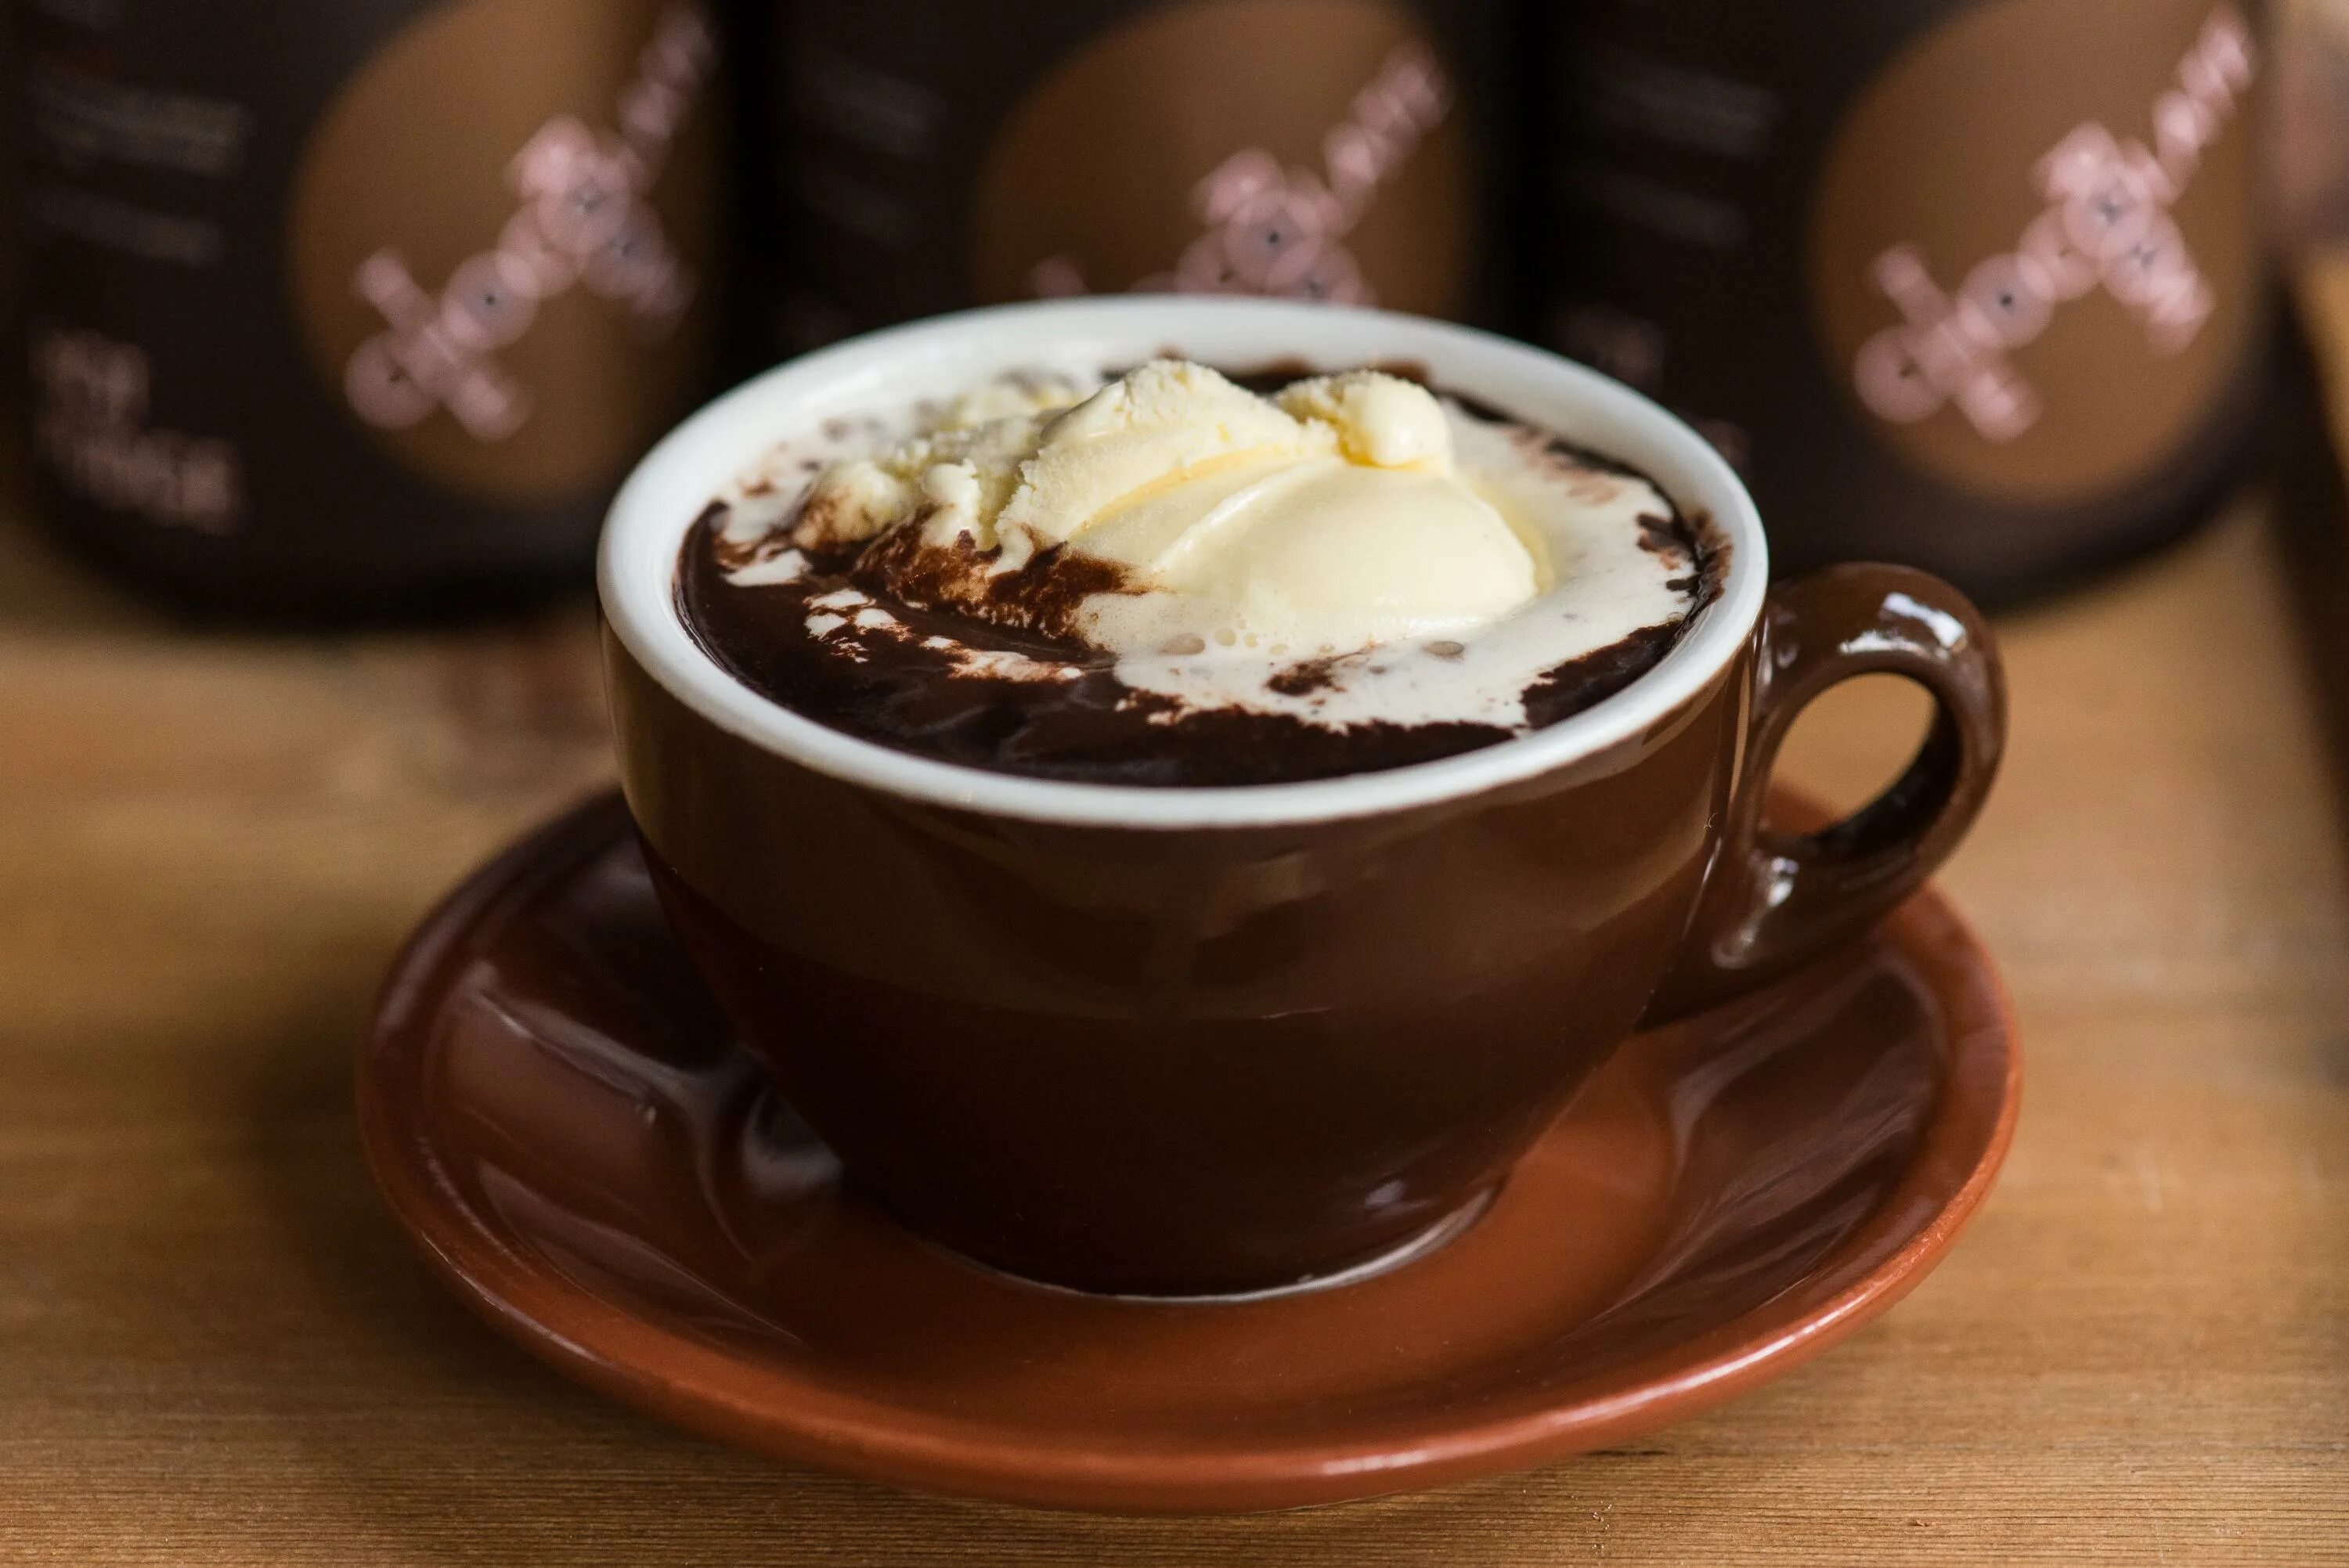 Кон горячий. Горячий шоколад Шоколадница. Чашка горячего шоколада. Чашка с горячим шоколадом. Кофе и шоколад.